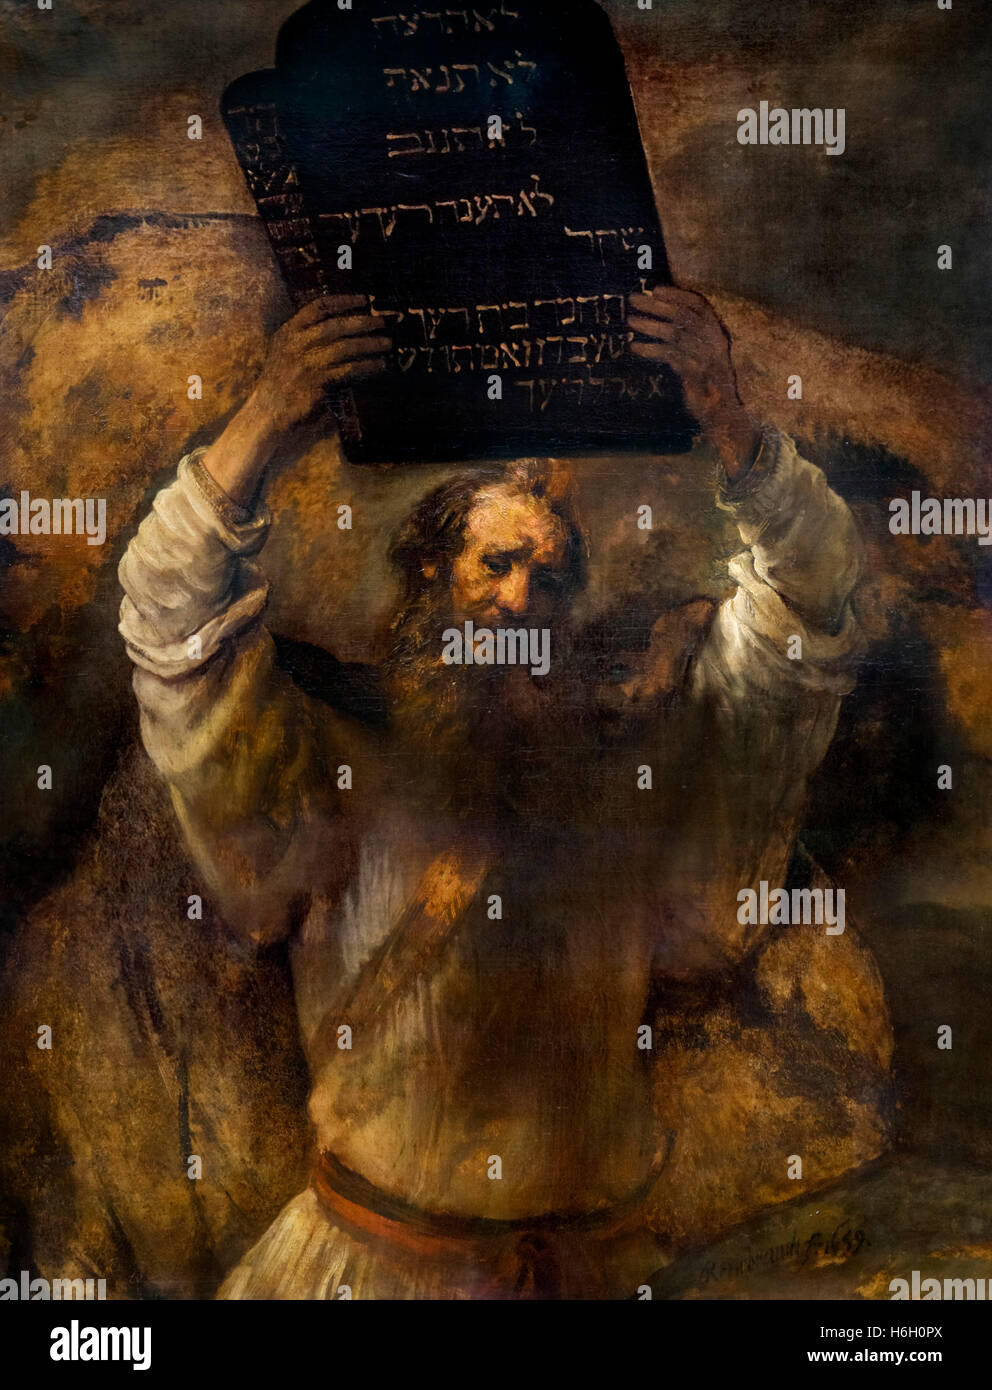 Mosè rompere le compresse della legge da parte di Rembrandt van Rijn, olio su tela, 1659. Il dipinto raffigura Mosè fracassare le compresse in cui Dio aveva scritto i Dieci Comandamenti. Foto Stock